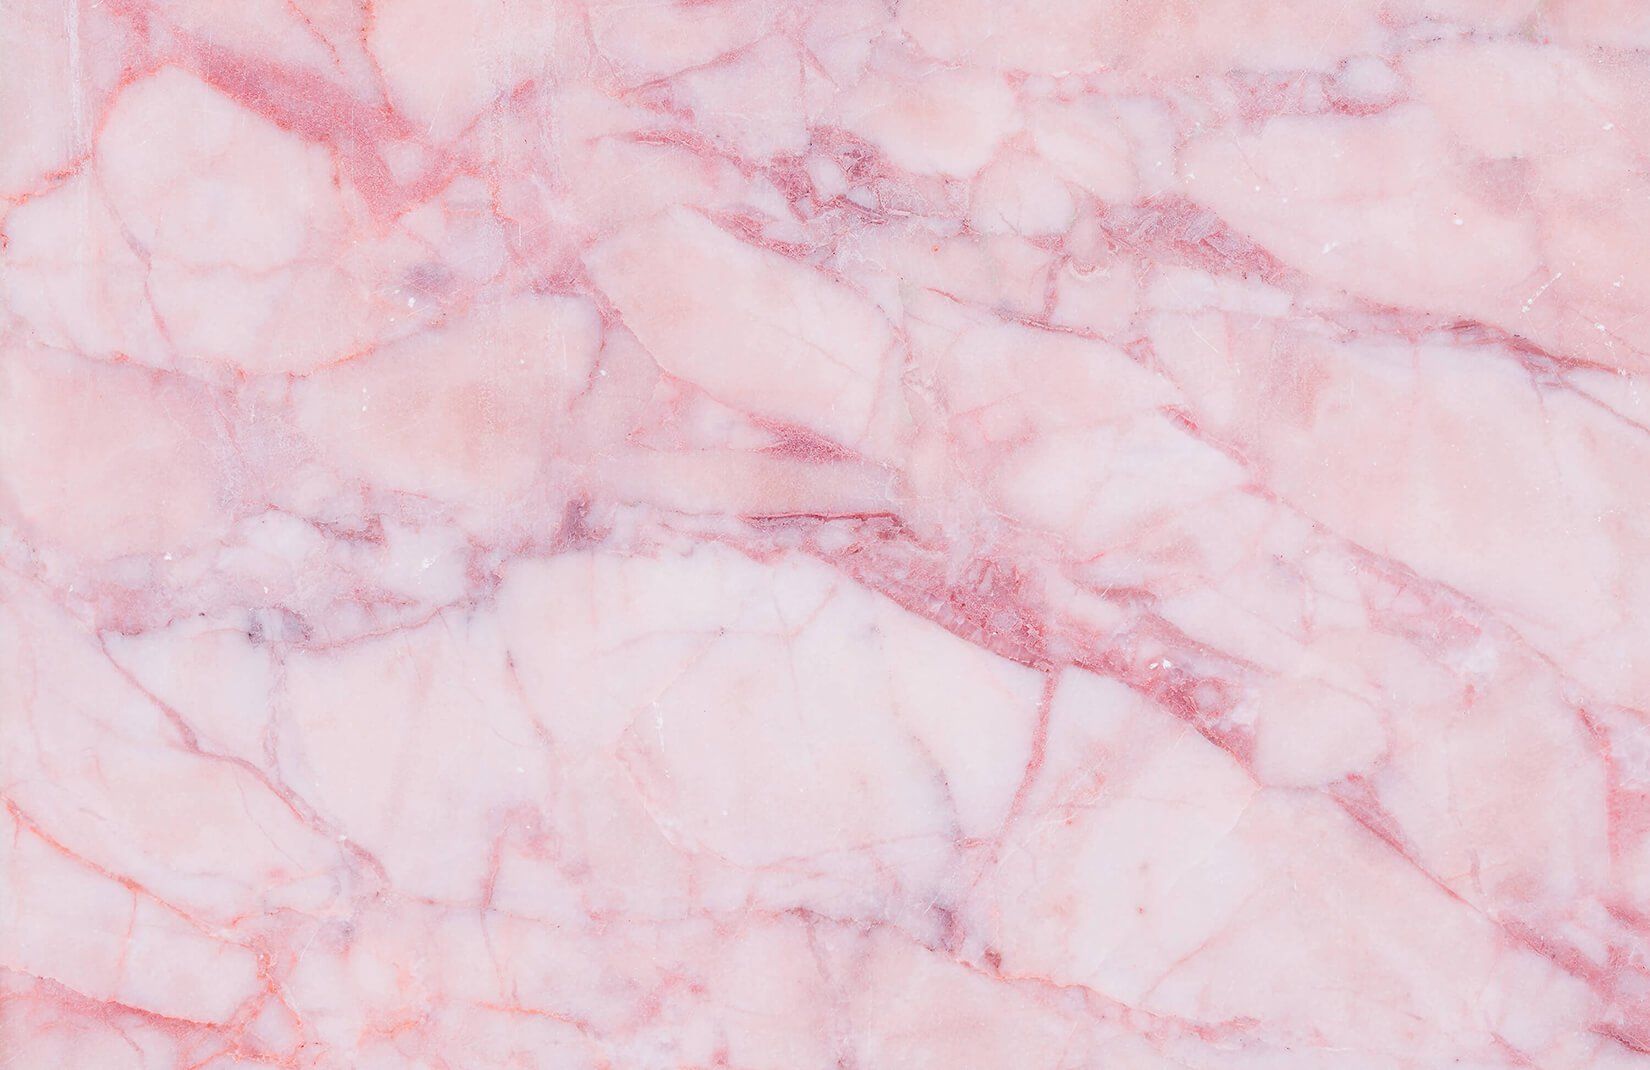 Hình nền hồng đá Marble: Được lấy cảm hứng từ loại đá Marble cao cấp, hình nền hồng đá Marble này sẽ mang lại vẻ đẹp đầy sang trọng cho màn hình của bạn. Với sự kết hợp tinh tế giữa màu hồng tươi và trắng tinh khiết, bạn sẽ cảm thấy một cảm giác thật sự đặc biệt khi sử dụng điện thoại của mình.